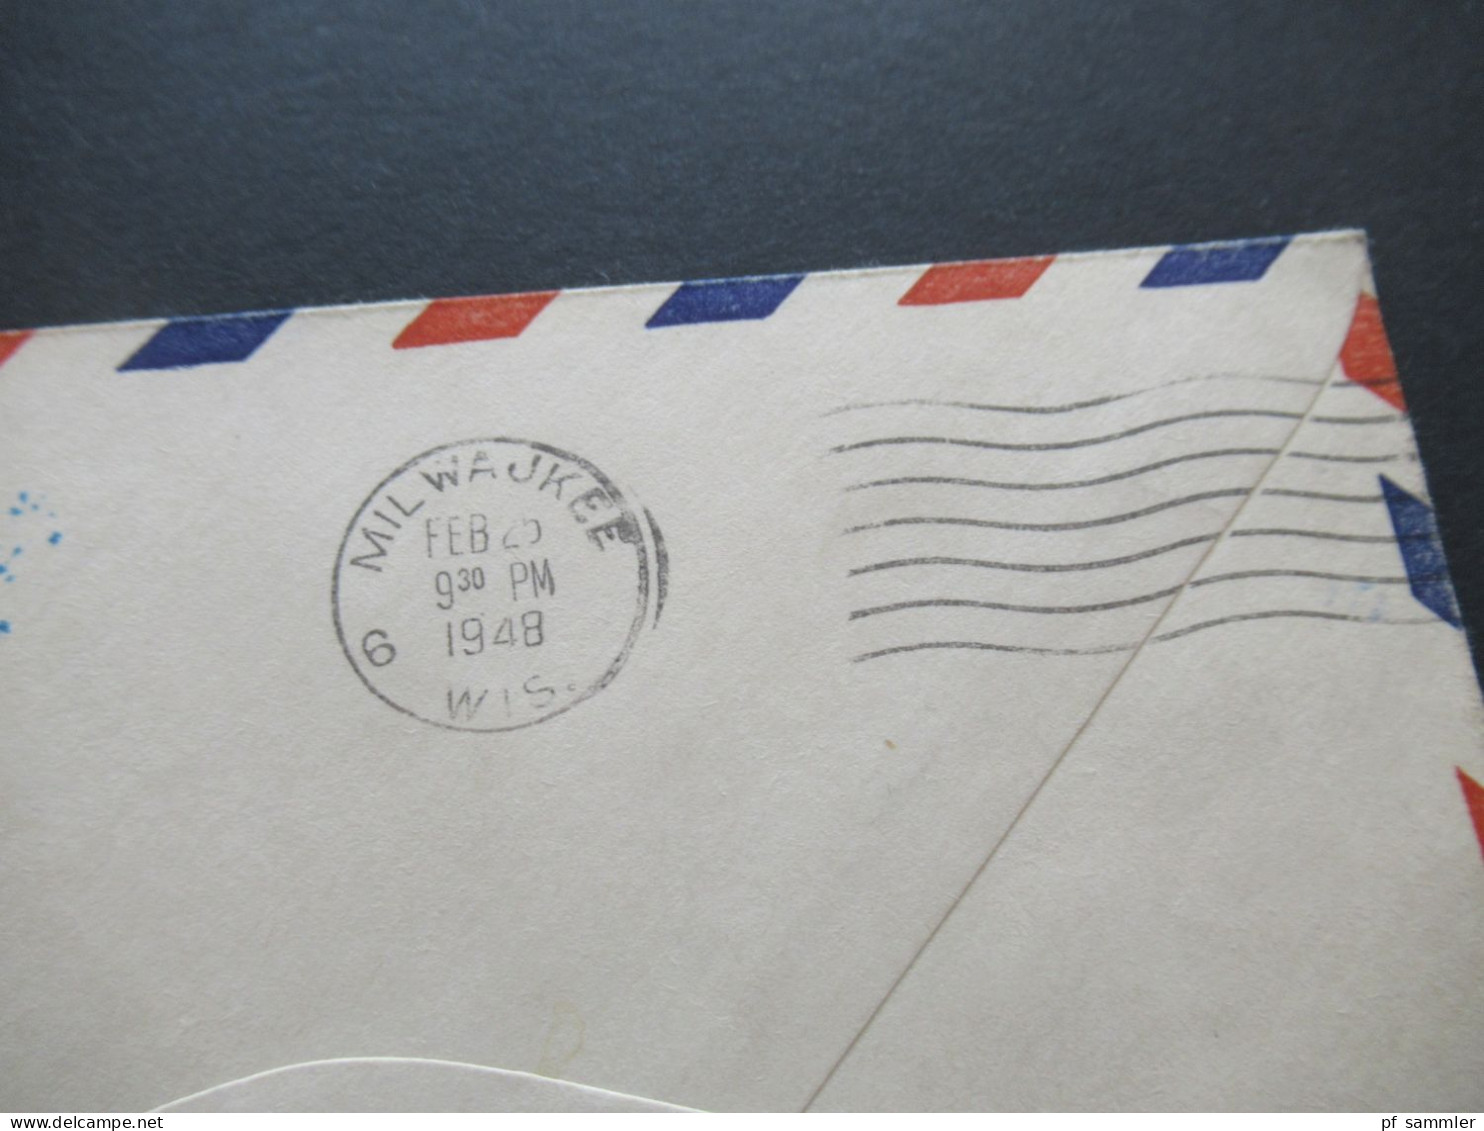 USA 1948 Air Mail US Air Mail Hibbing Minh. First Flight AM 86 / Rückseitig Stempel Milwaukee Wis. - 2a. 1941-1960 Gebraucht